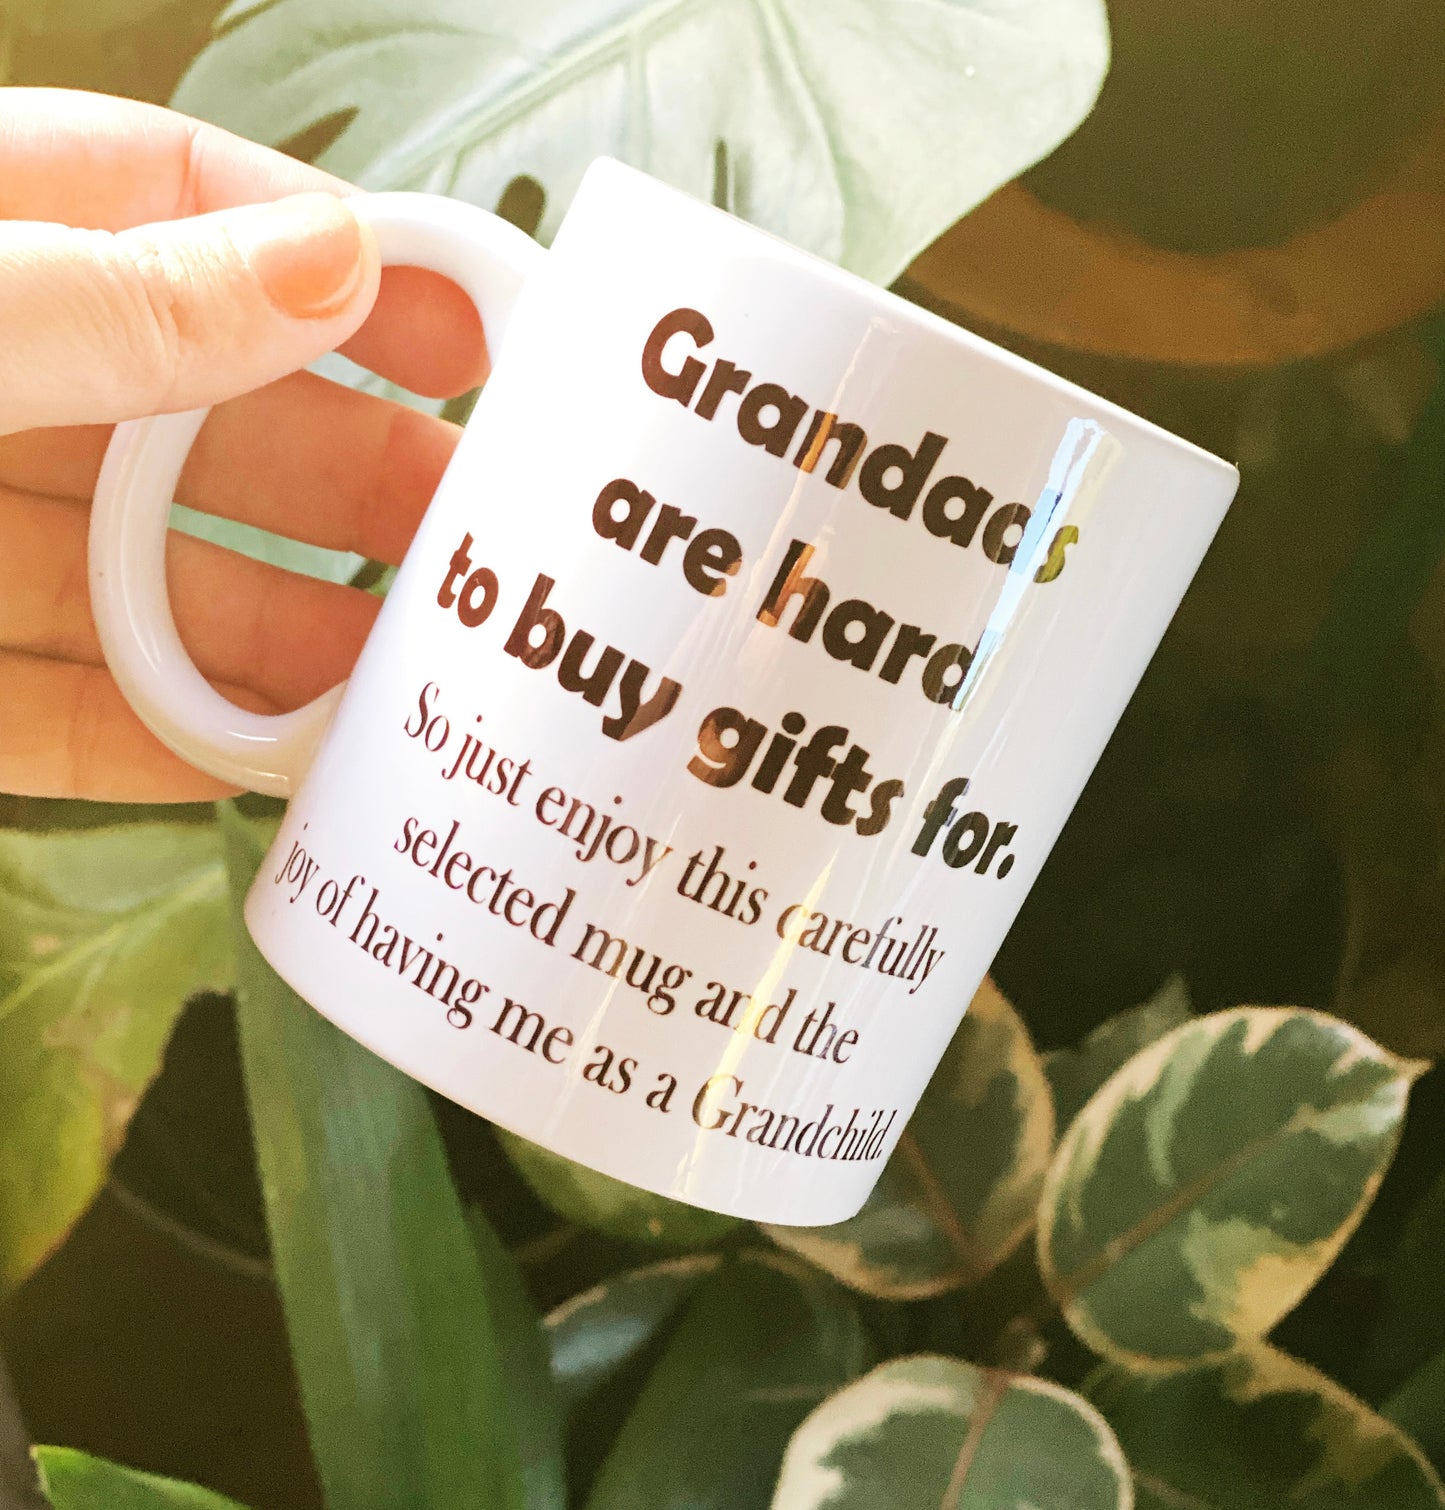 Gifts are hard mug